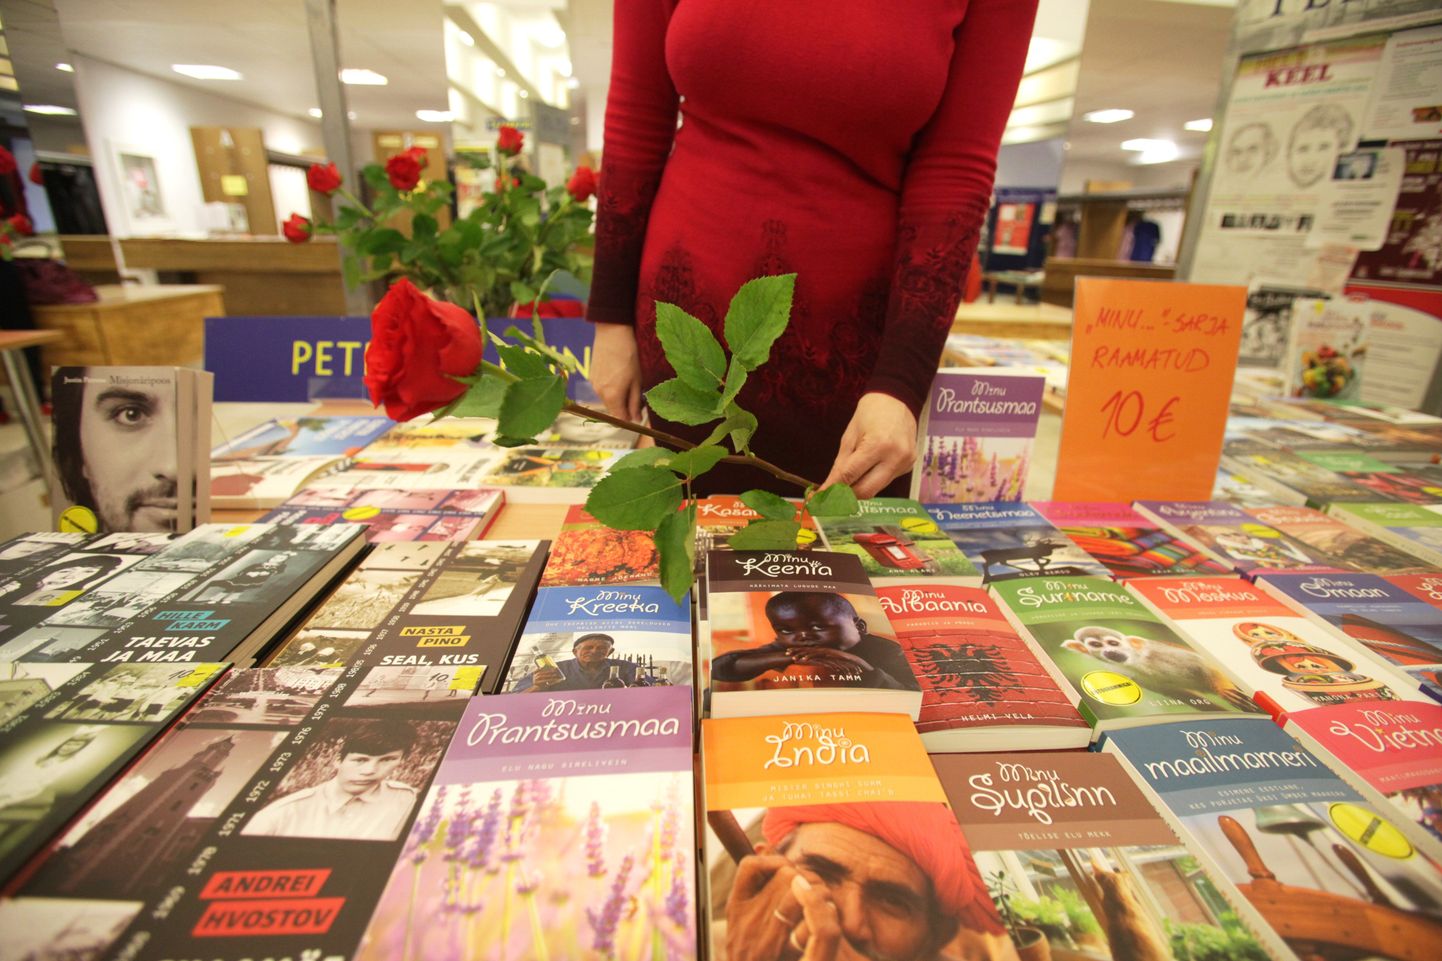 Raamatud ja roosid on olnud Tartu ülikooli raamatukogu fuajees käsikäes ka mõnel eelmise aasta raamatu ja roosi päeval.